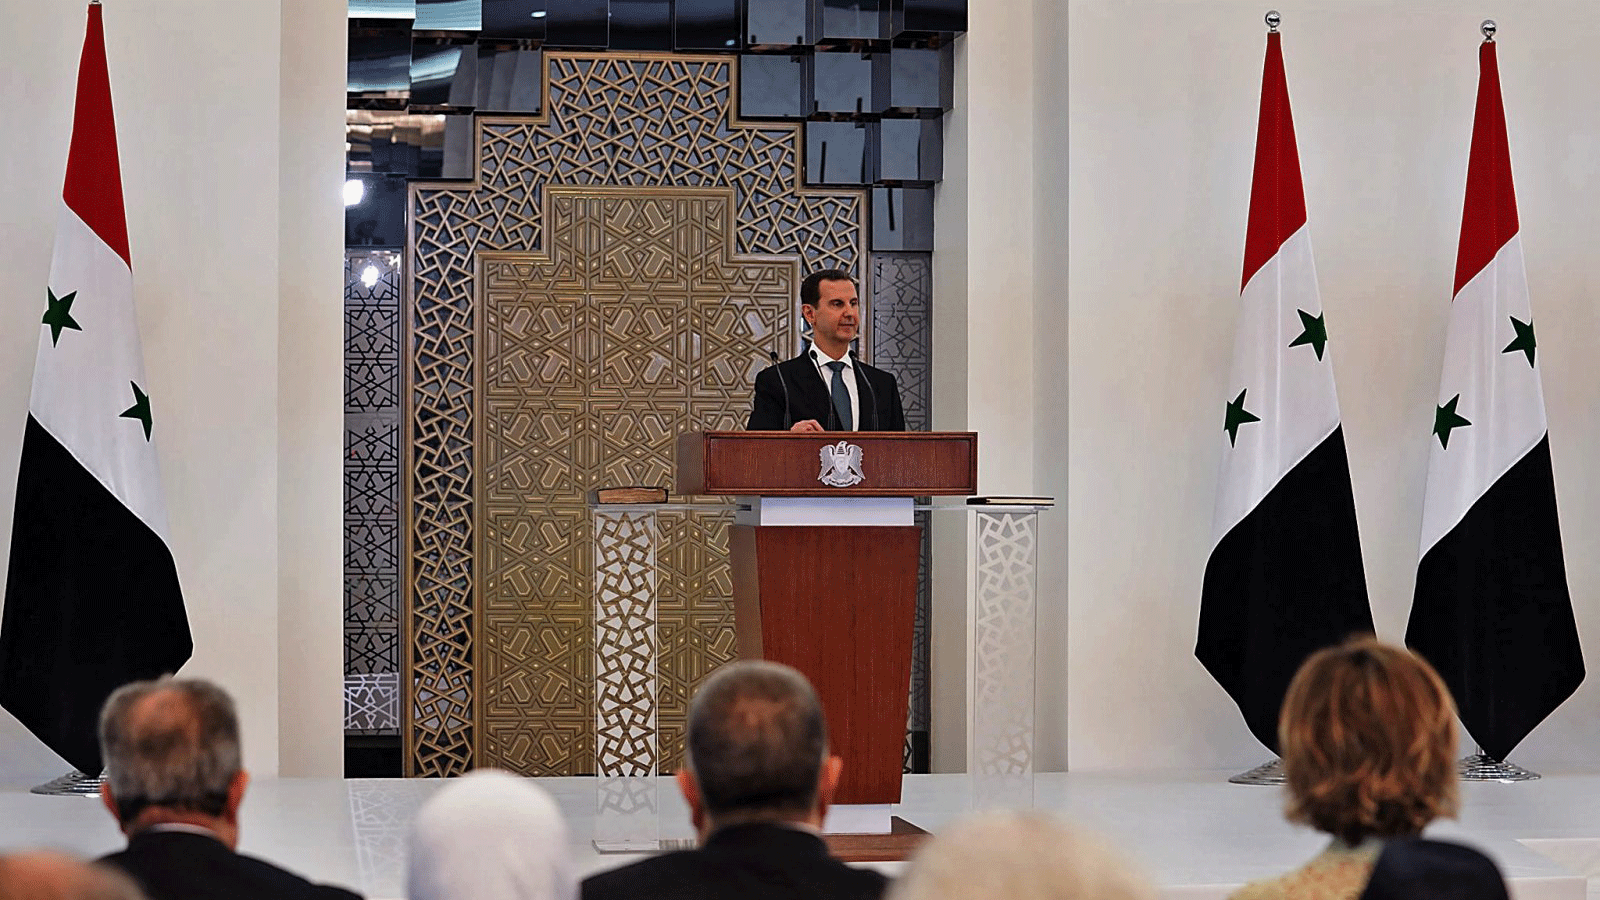 صورة نشرتها الصفحة الرسمية للرئاسة السورية على الفيسبوك تُظهر بشار الأسد وهو يلقي كلمة في مراسم أداء اليمين لولايته الرابعة، في العاصمة دمشق، سوريا. 17 تموز/ يوليو 2021